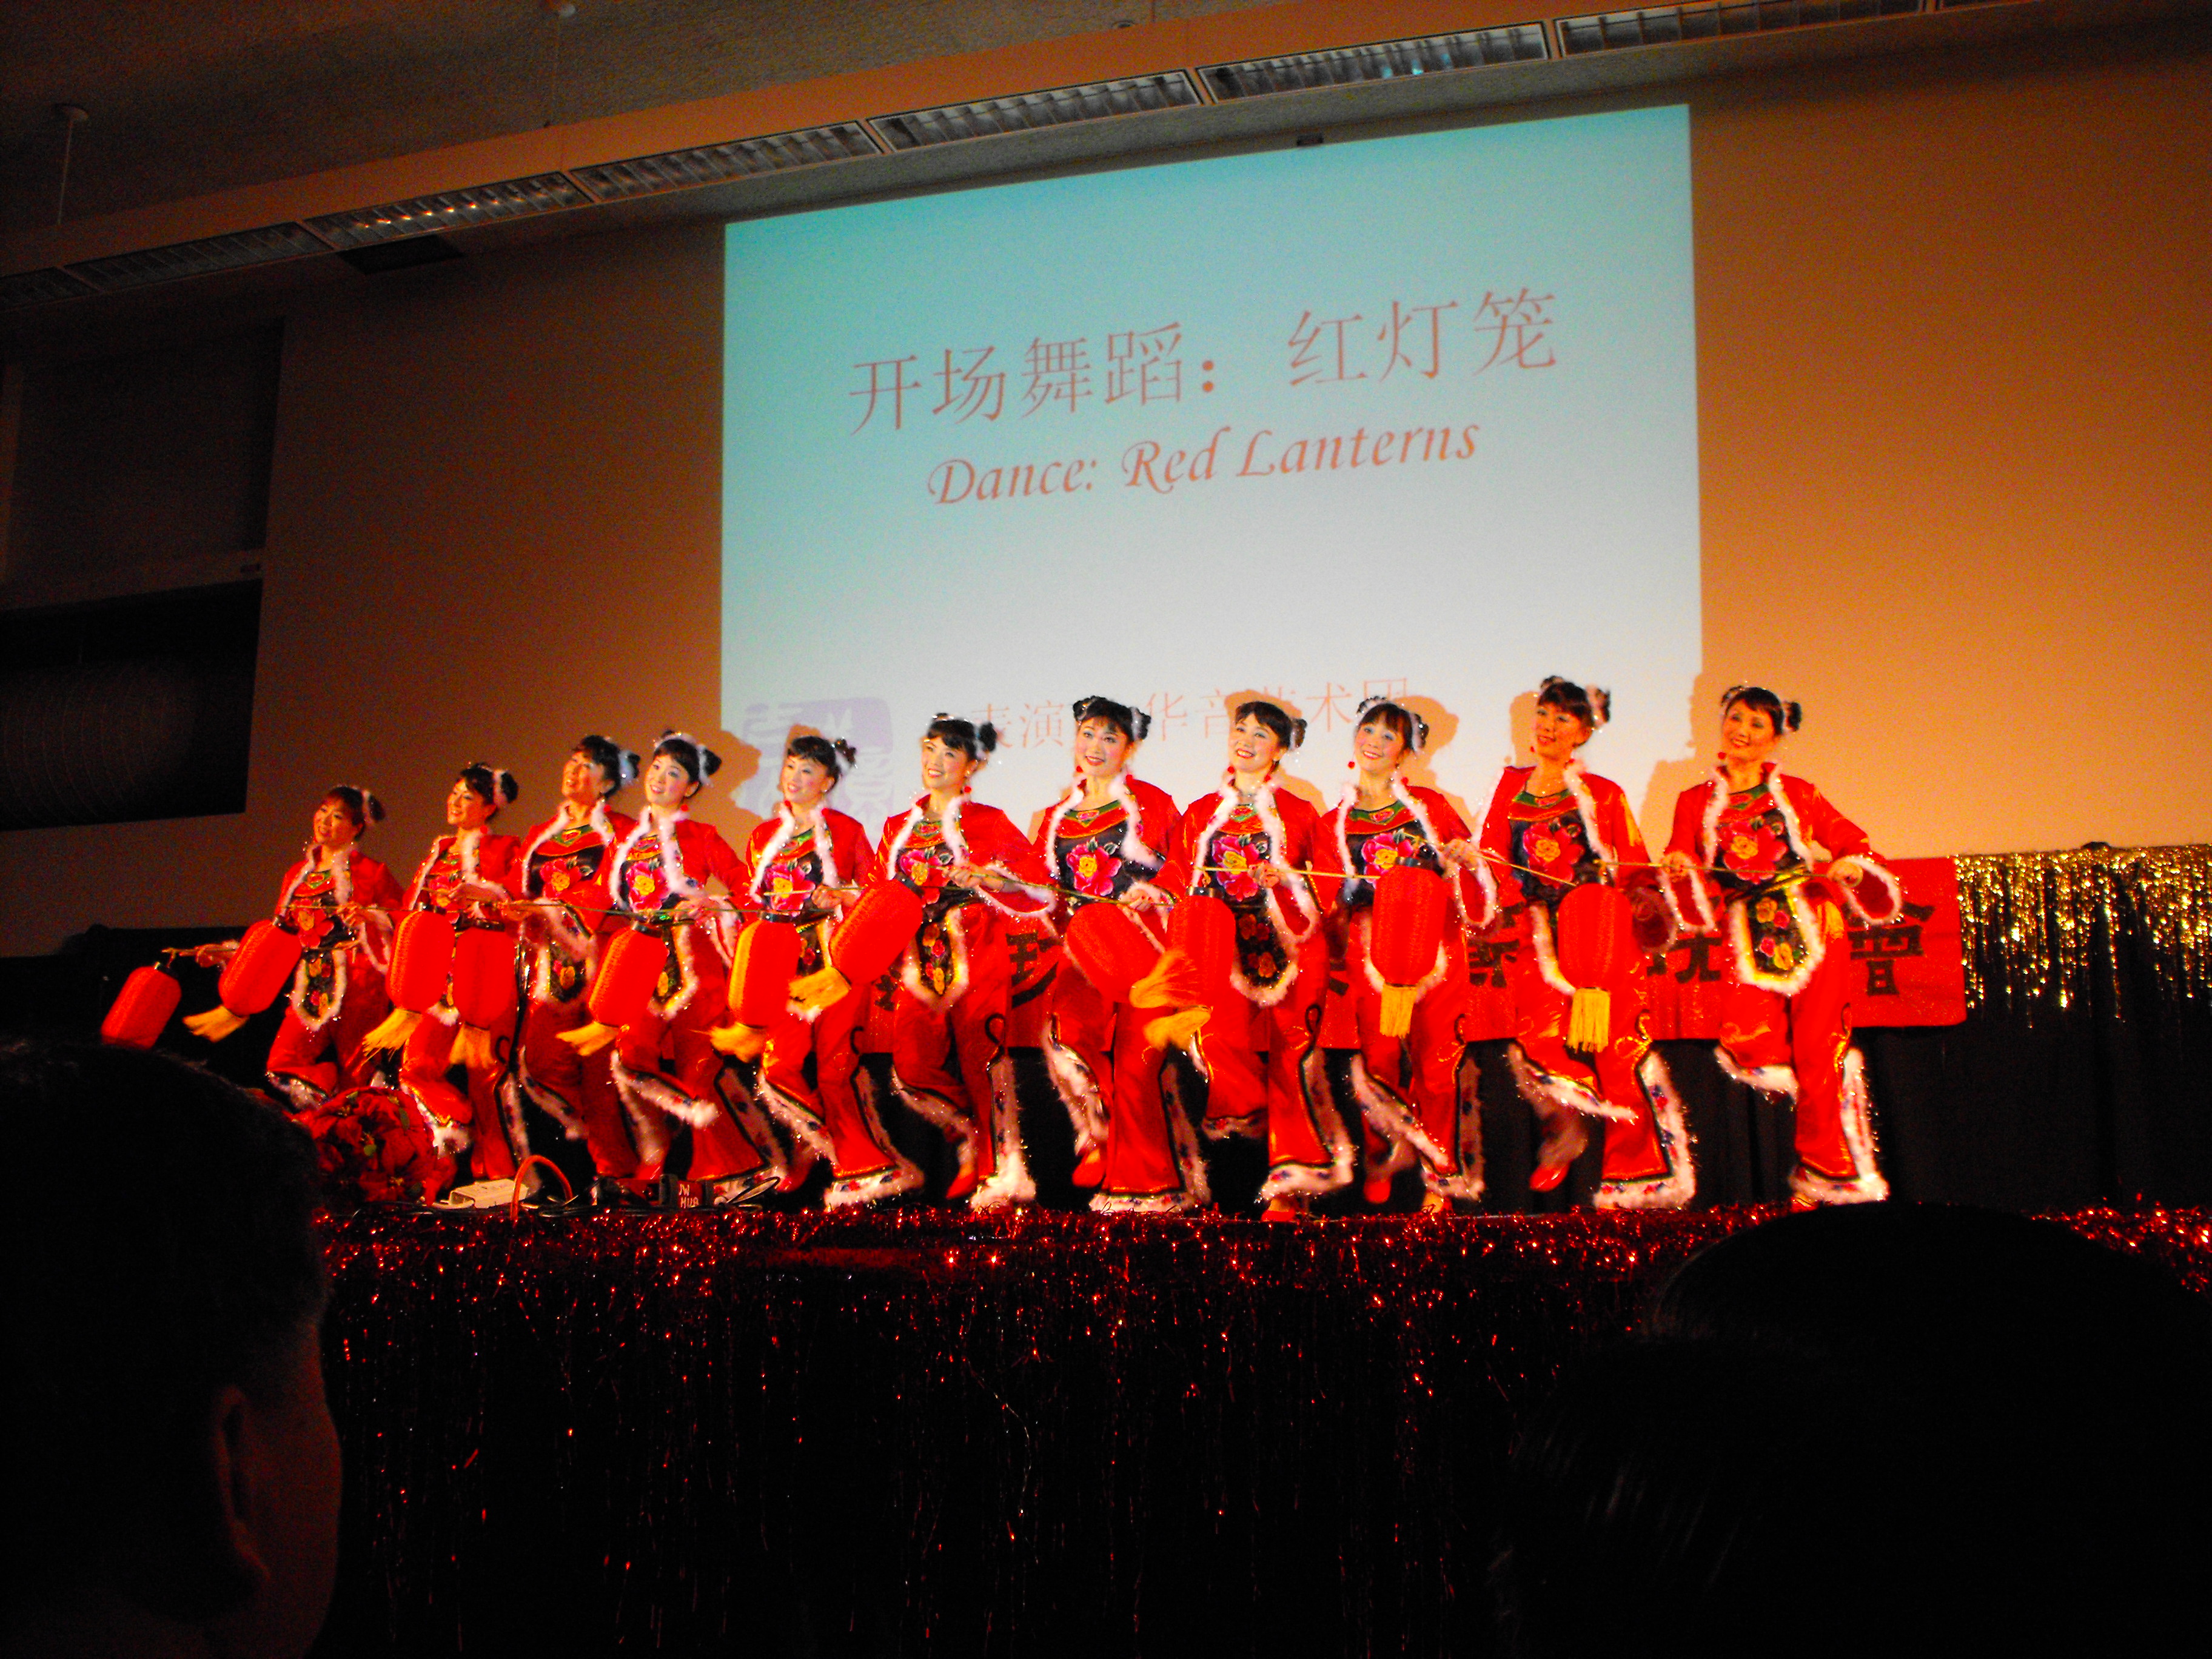 2009 UW Chinese New Year Image 98